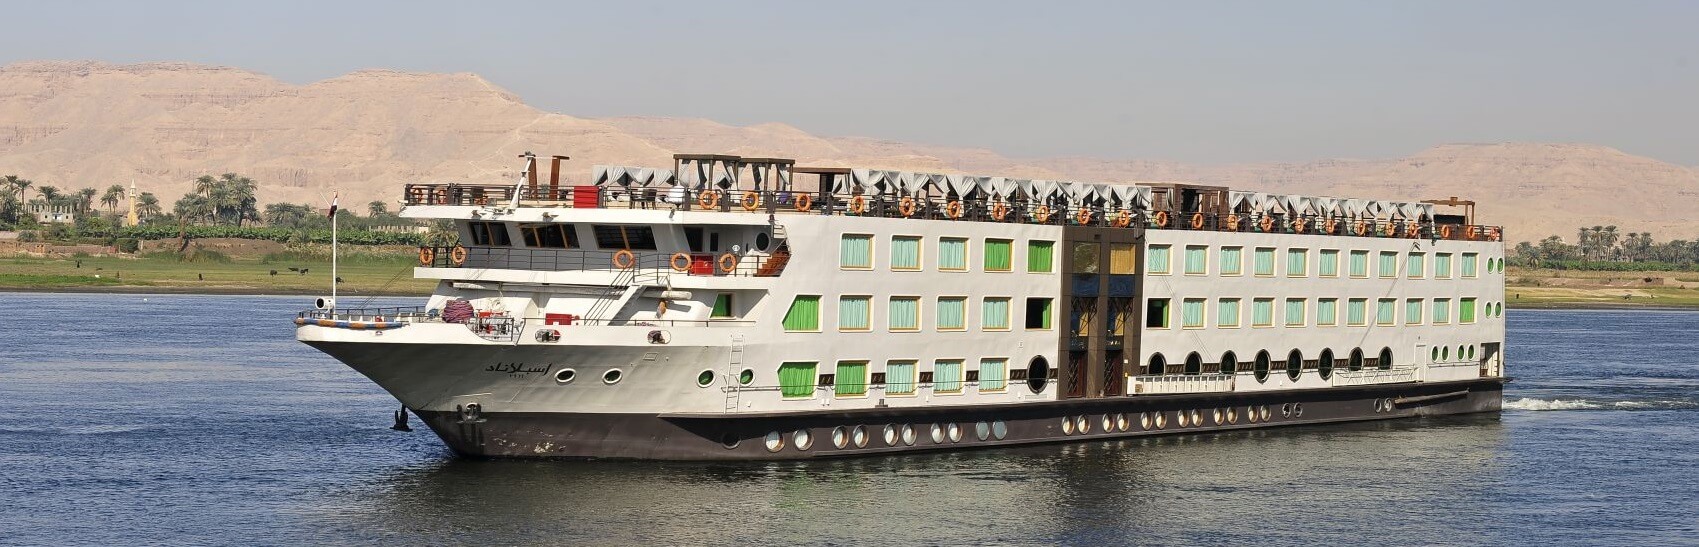 M/S Esplanade Nile Cruise